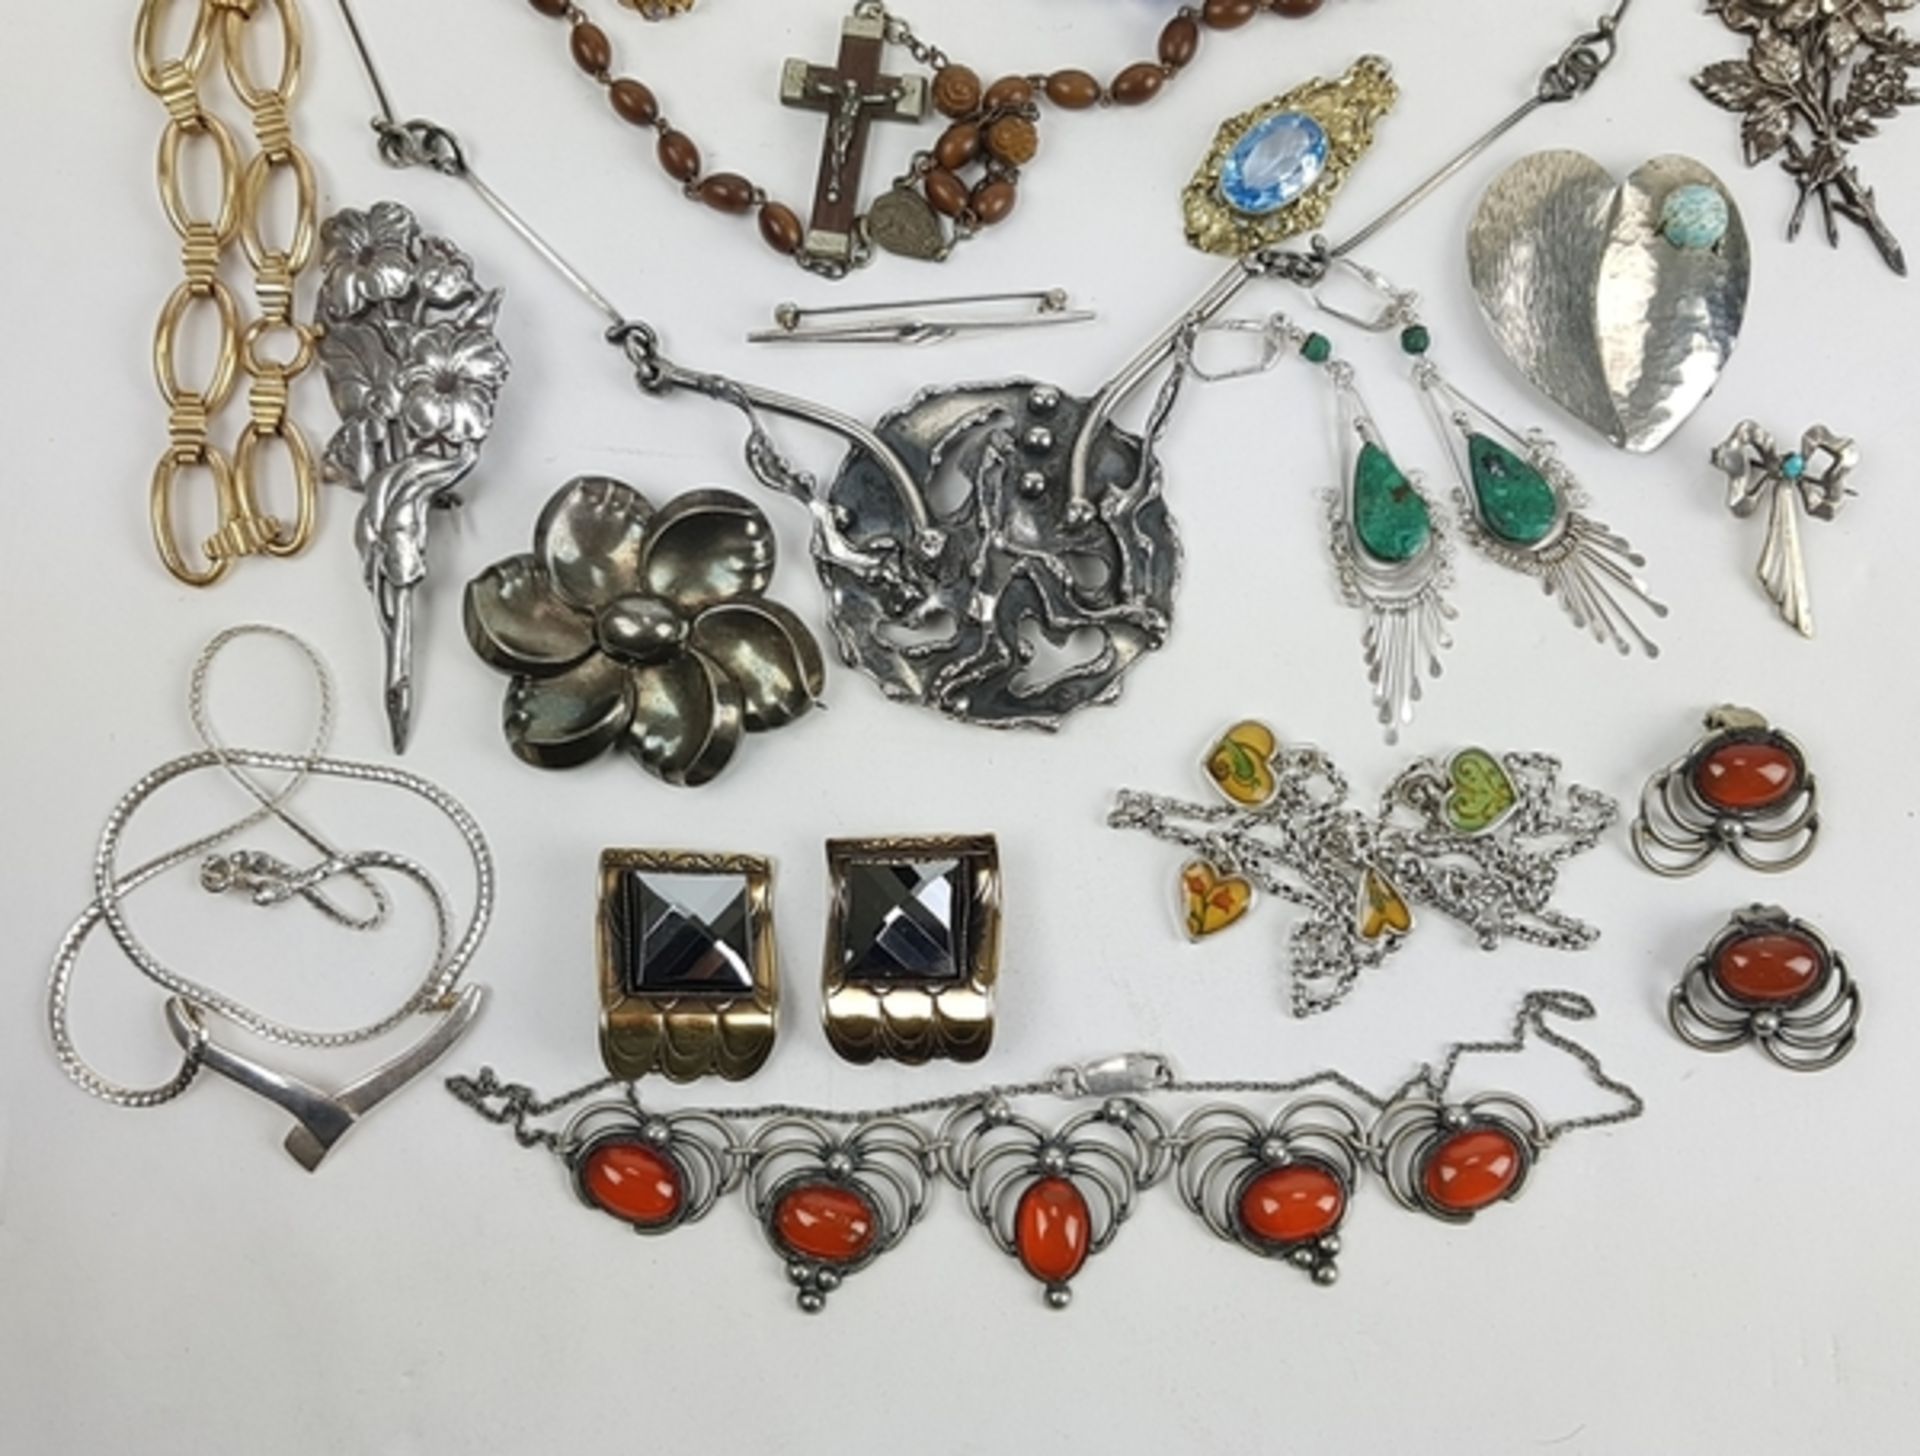 (Sieraden) Diverse materialen, lot van 27 stuks diverse sieraden, 20e eeuwDiverse materialen wa - Bild 2 aus 17